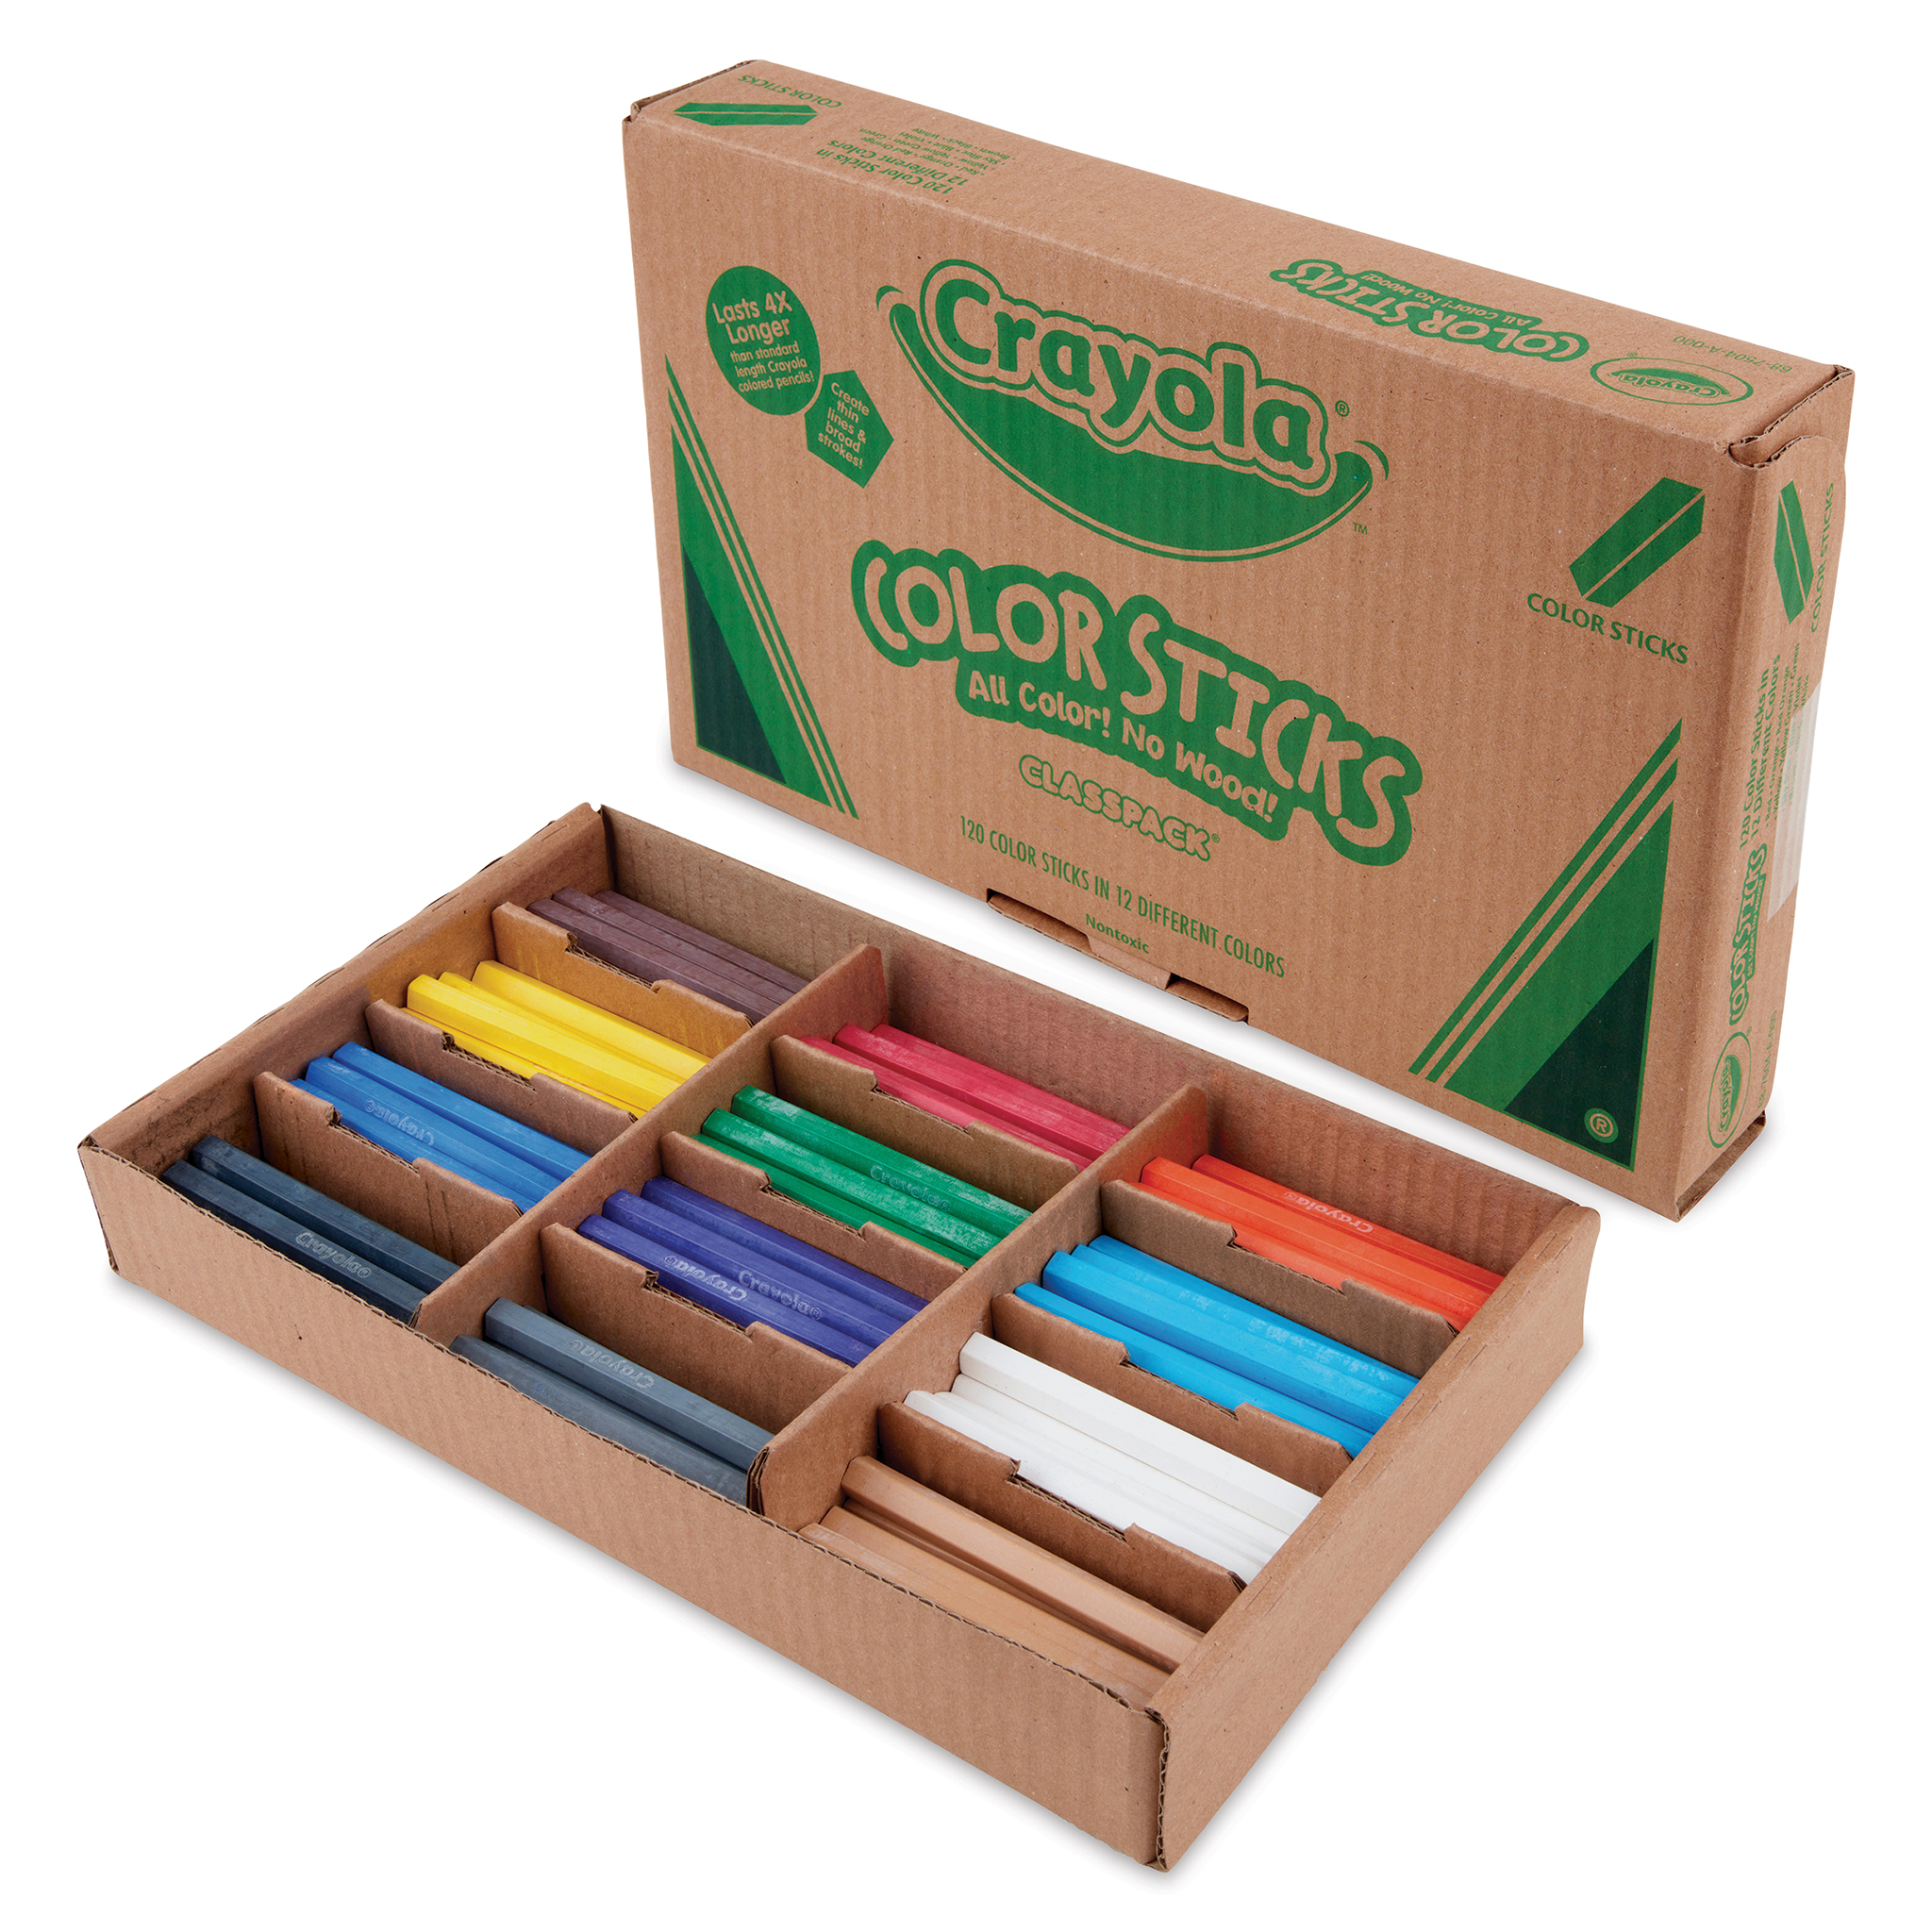 Quick 120 Crayola Crayons Sort in Color Order. 